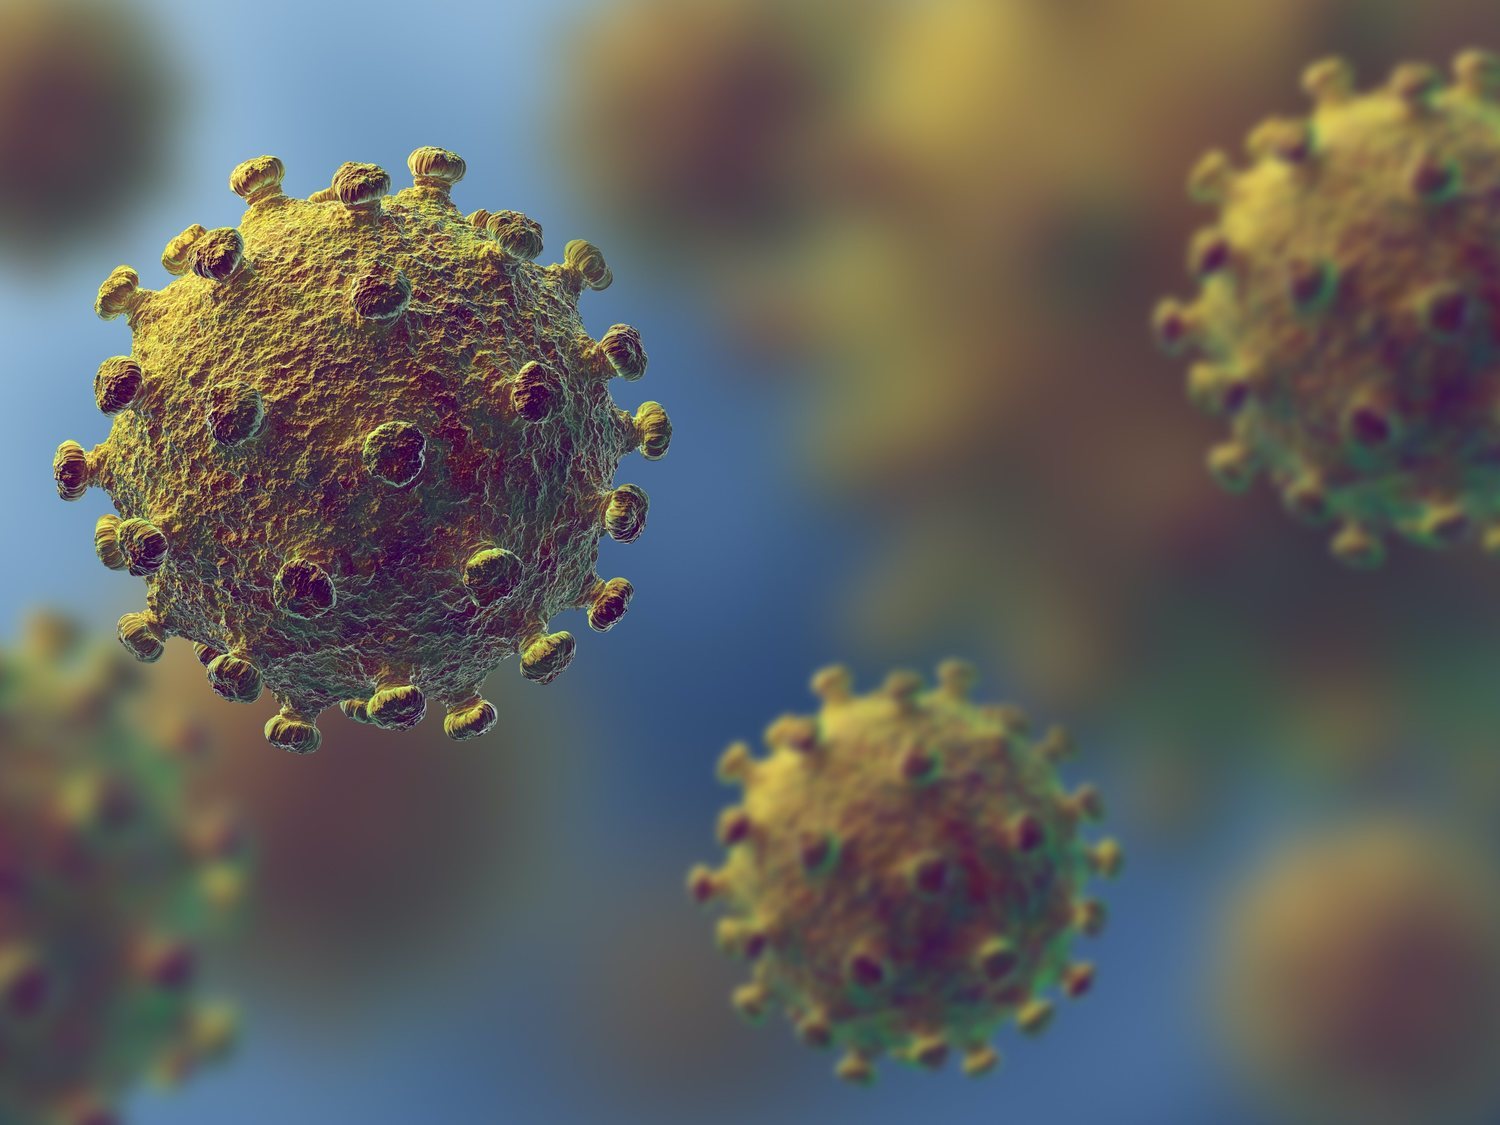 "El coronavirus que ahora se extiende parece menos grave", según un científico italiano